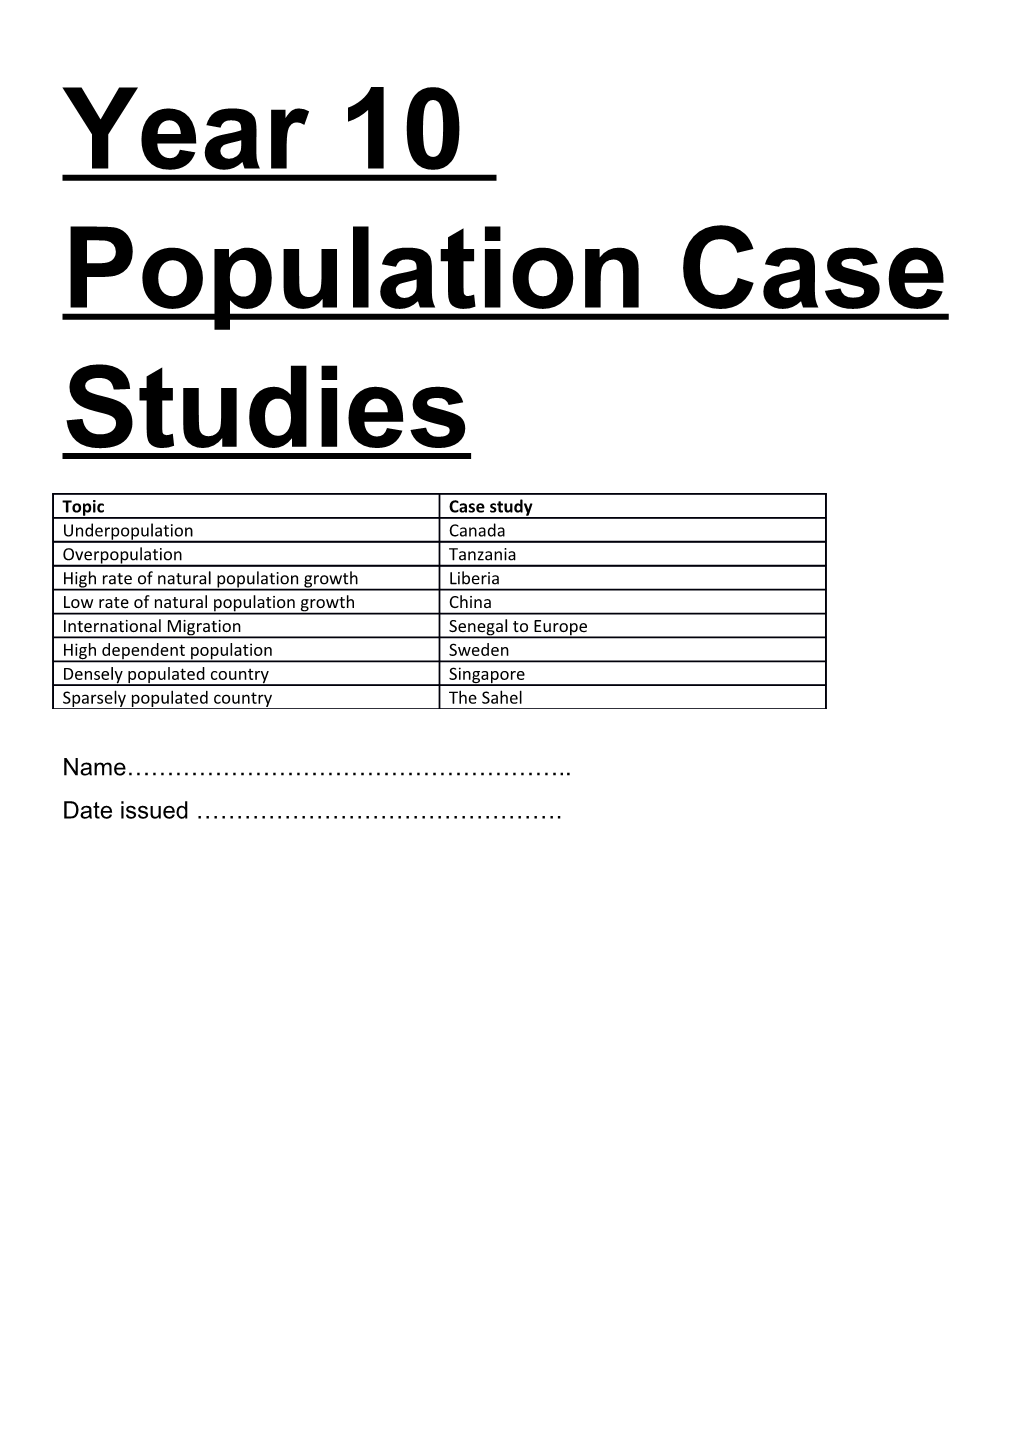 Year 10 Population Case Studies